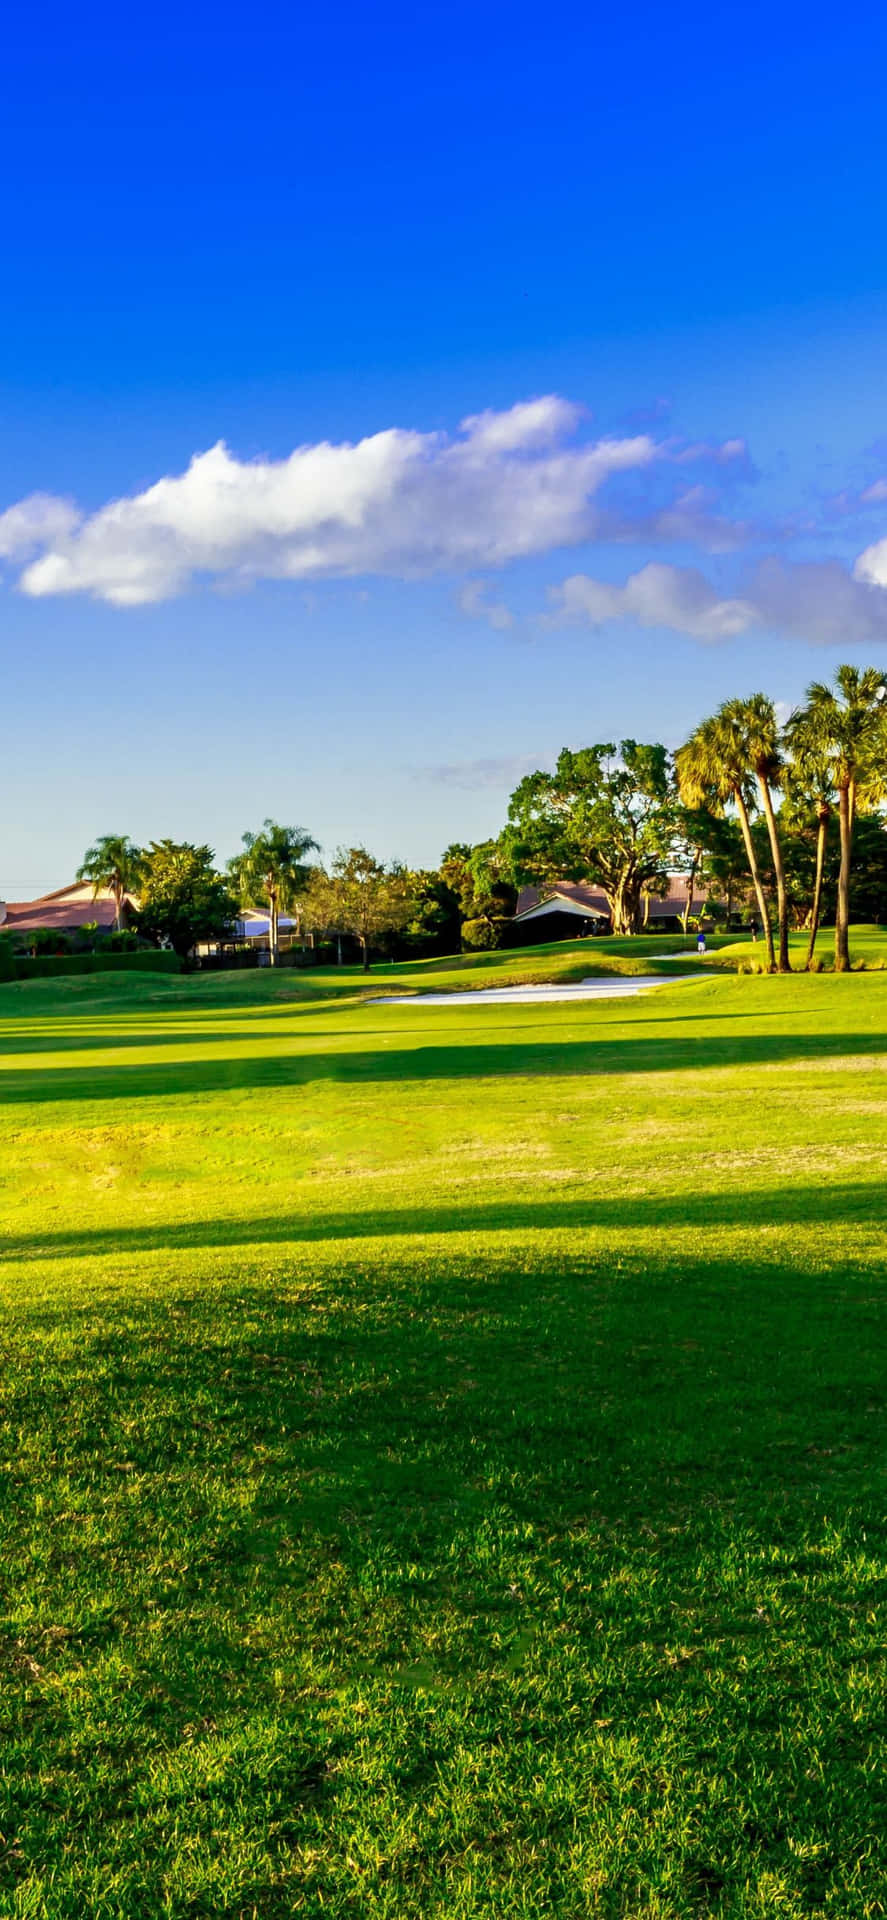 Lưu giữ cảm nhận tuyệt vời tại sân golf trông đẹp như tranh với iPhone X Golf Course Background. Bạn sẽ cảm thấy như mình đang đứng trên sân golf với khung cảnh lộng lẫy và hoàn hảo này. 